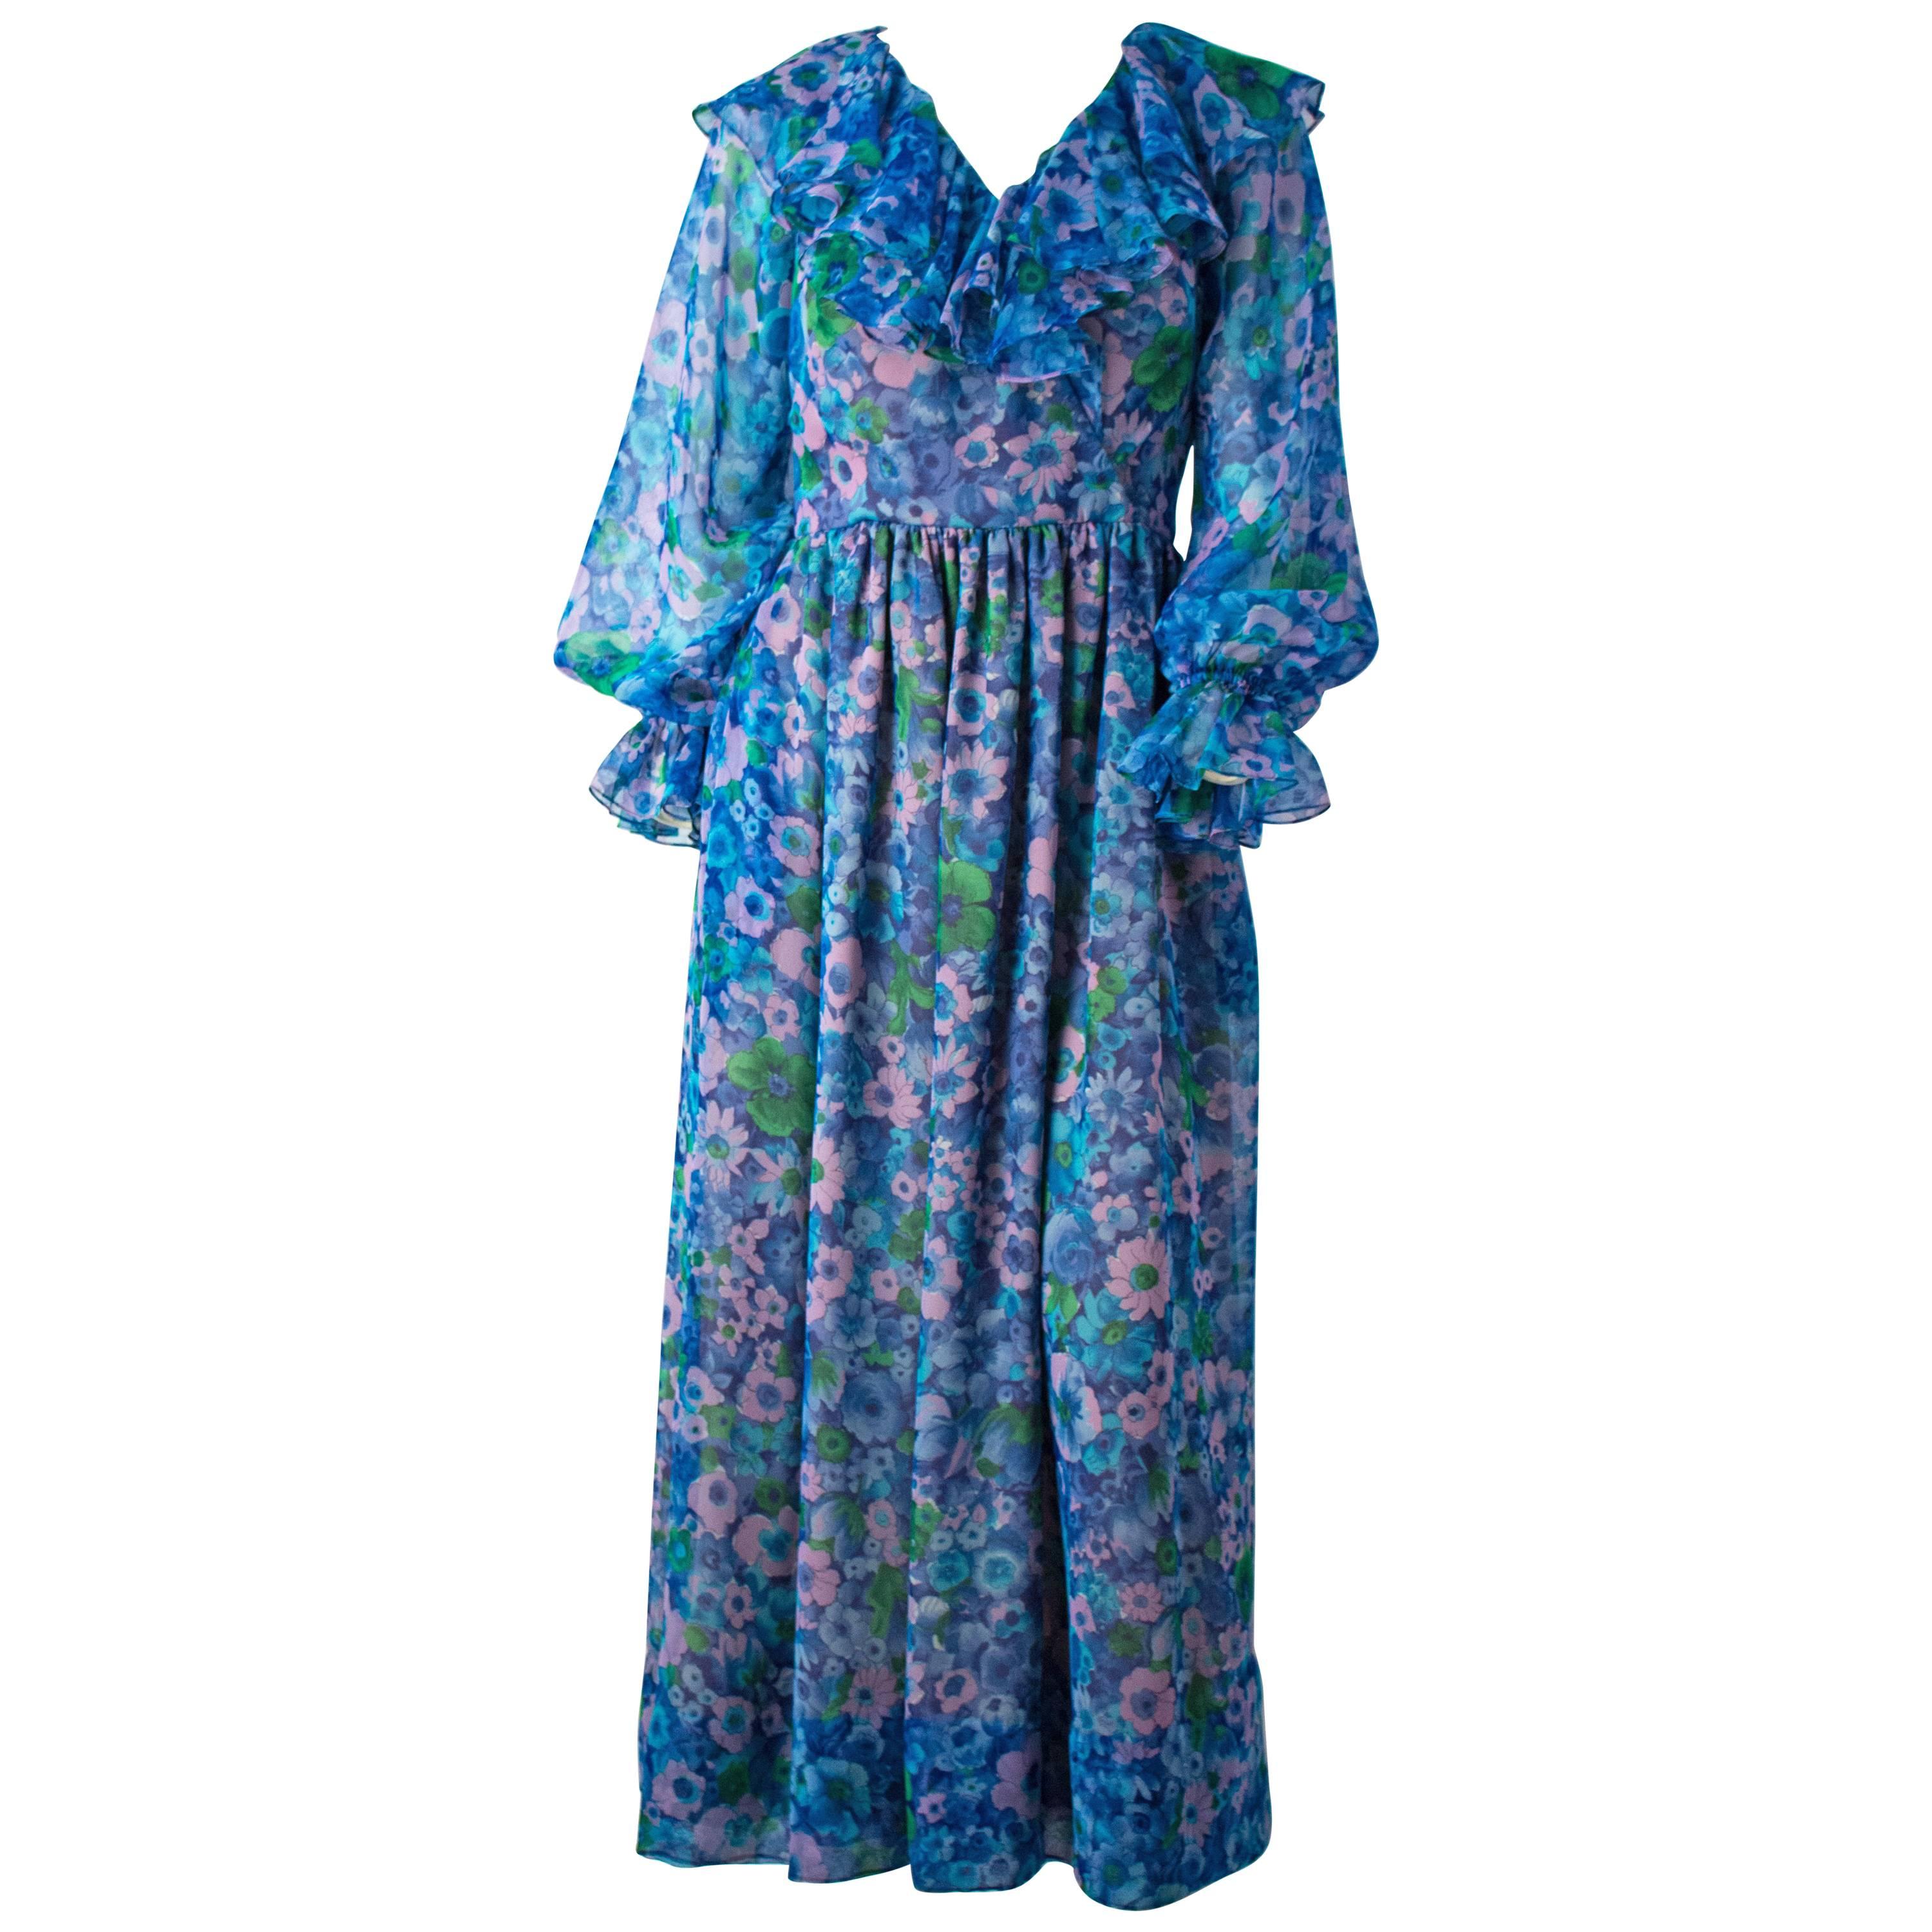 1970s Vintage Mauve Sheer Flutter Sleeve Gown  70s  Seventies Poly Chiffon Ruffled Peplum Waist Prairie Dress  Size Medium